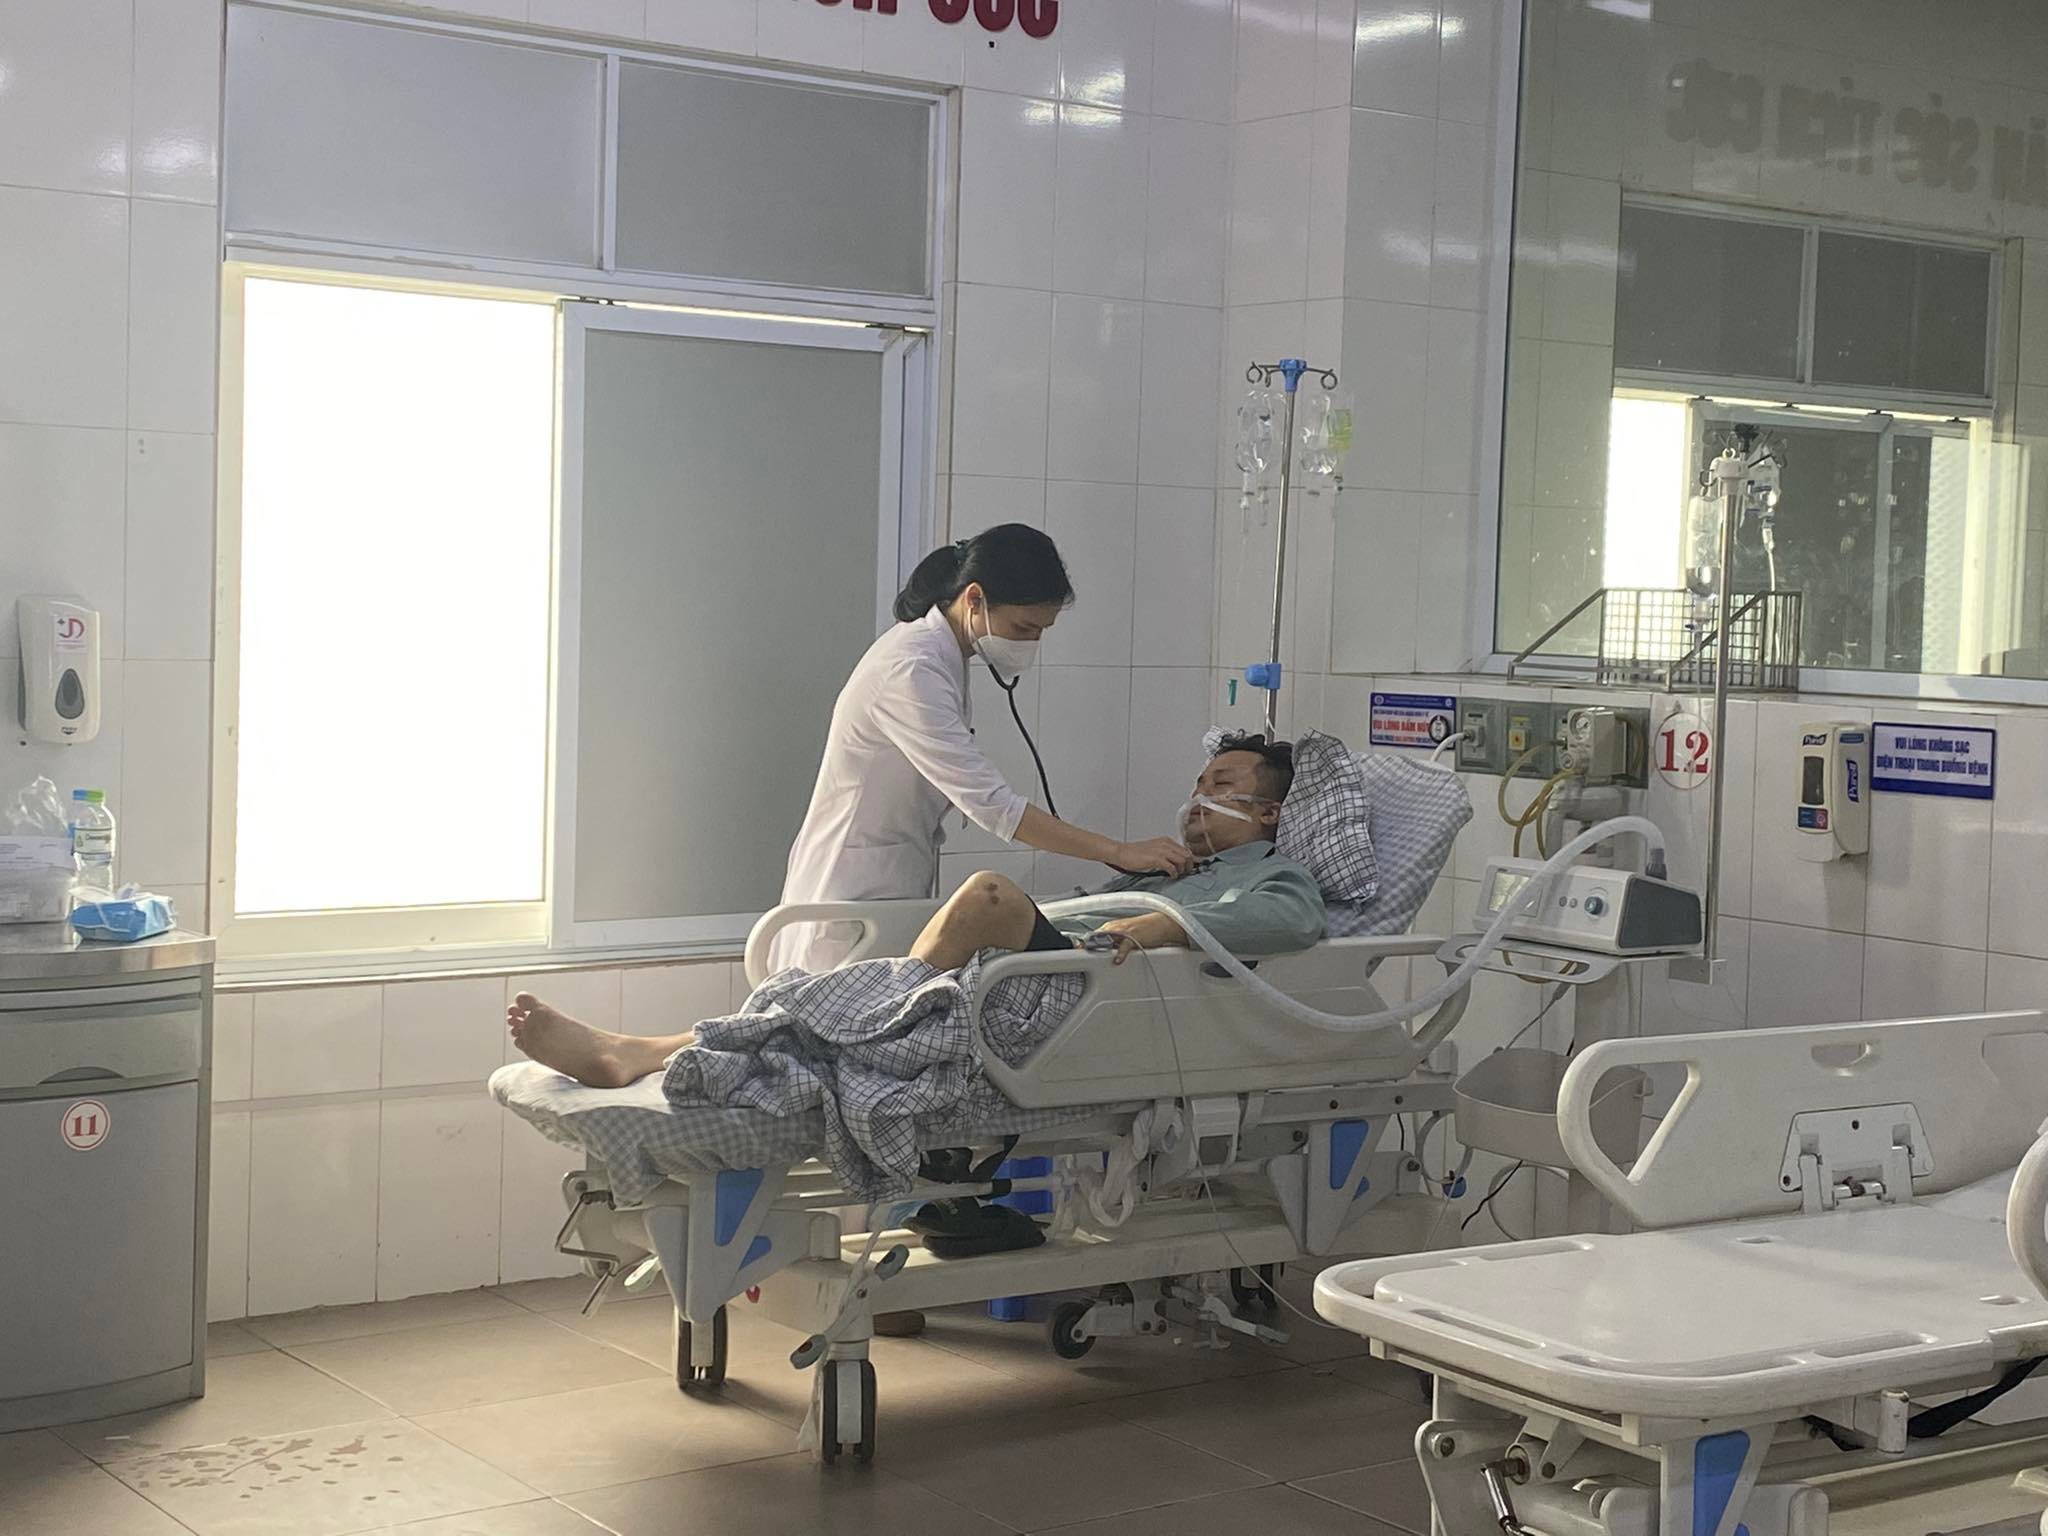 Nạn nhân bị thương đang được cấp cứu tại Bệnh viện Đa khoa tỉnh Phú Thọ đã qua cơn nguy kịch